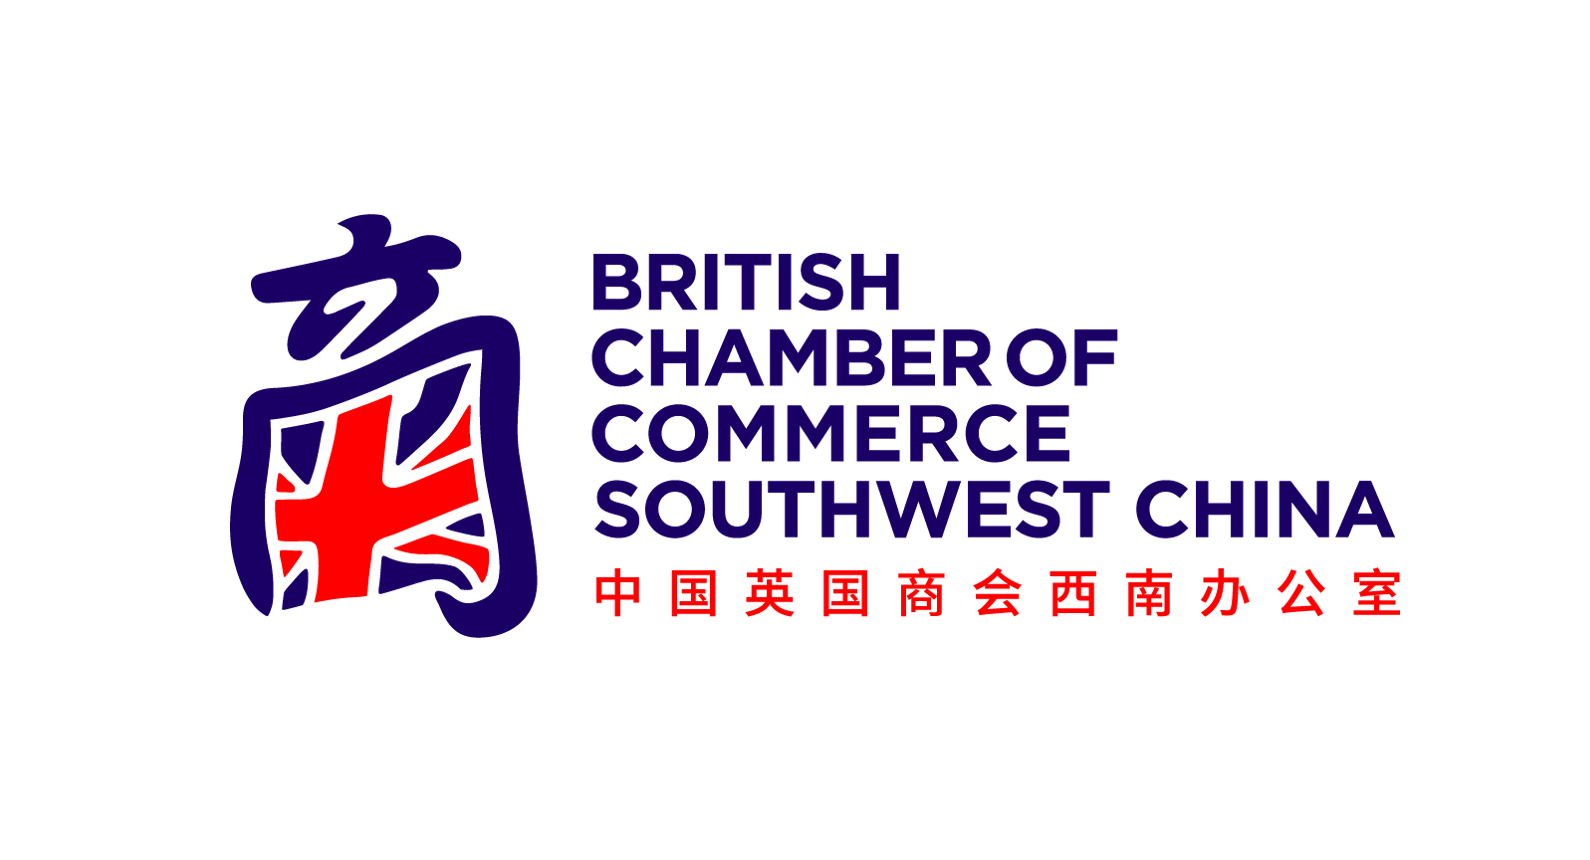 British Chamber of Commerce Southwest China chengdu expat